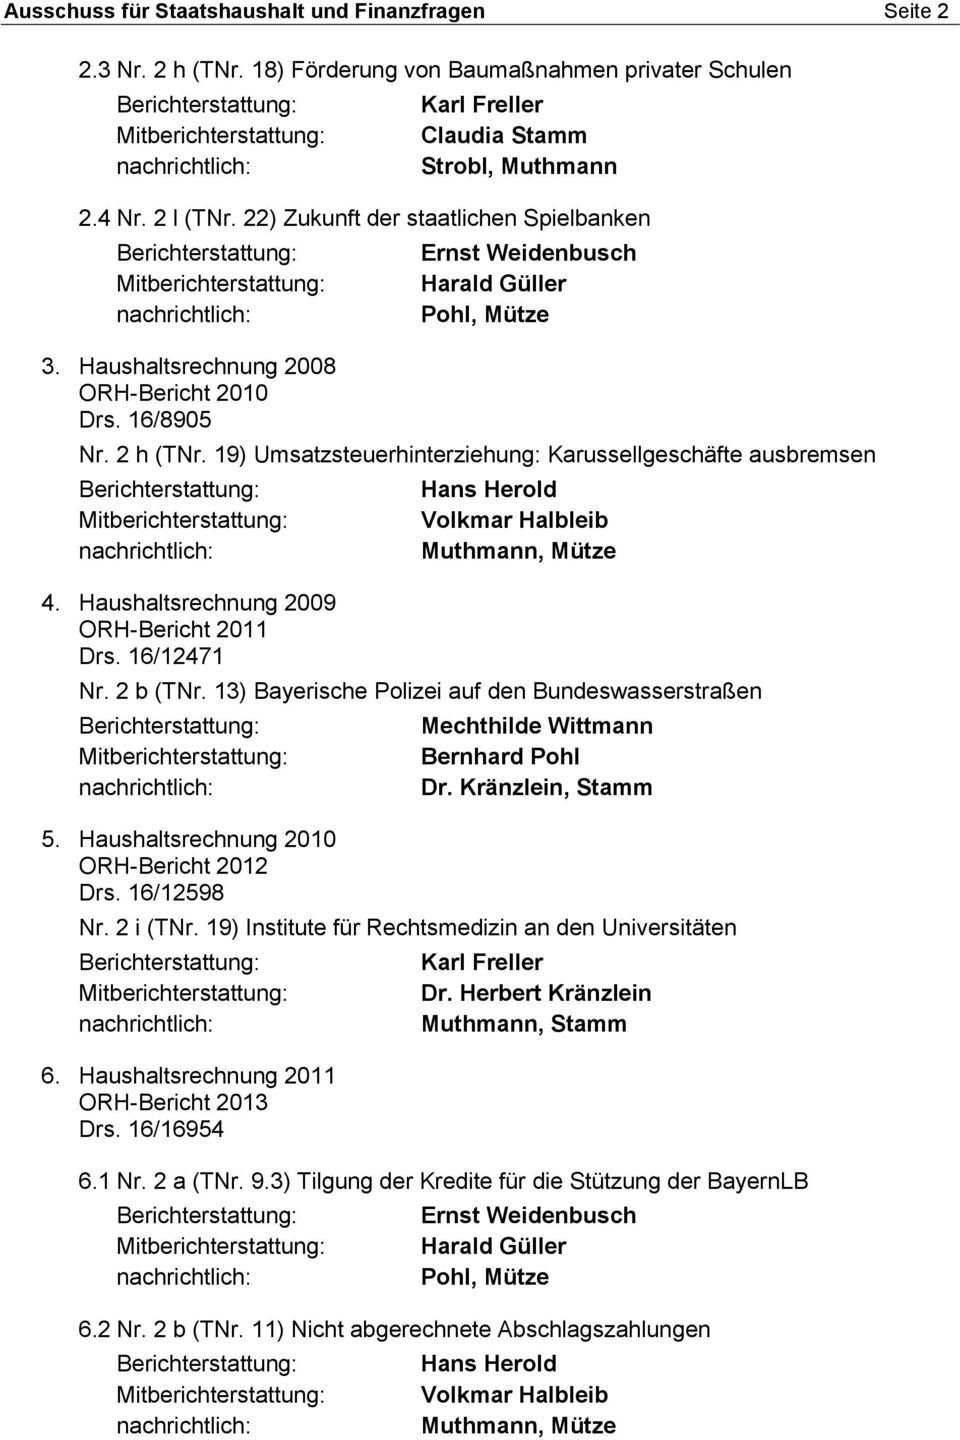 Haushaltsrechnung 2009 ORH-Bericht 2011 Drs. 16/12471 Nr. 2 b (TNr. 13) Bayerische Polizei auf den Bundeswasserstraßen 5. Haushaltsrechnung 2010 ORH-Bericht 2012 Drs. 16/12598 Nr. 2 i (TNr.